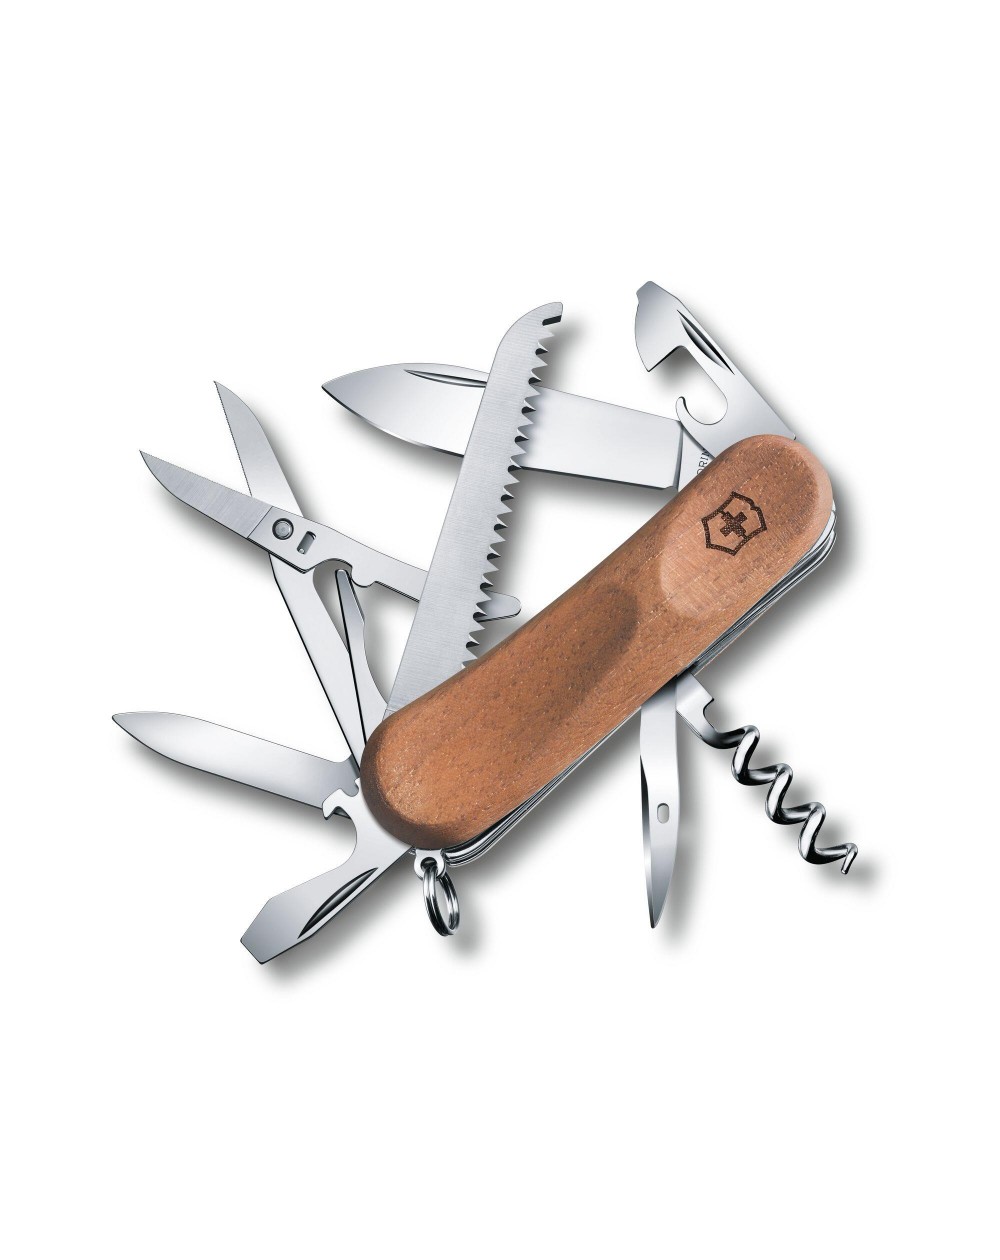 Couteau suisse Victorinox 13 fonctions avec manche en bois.